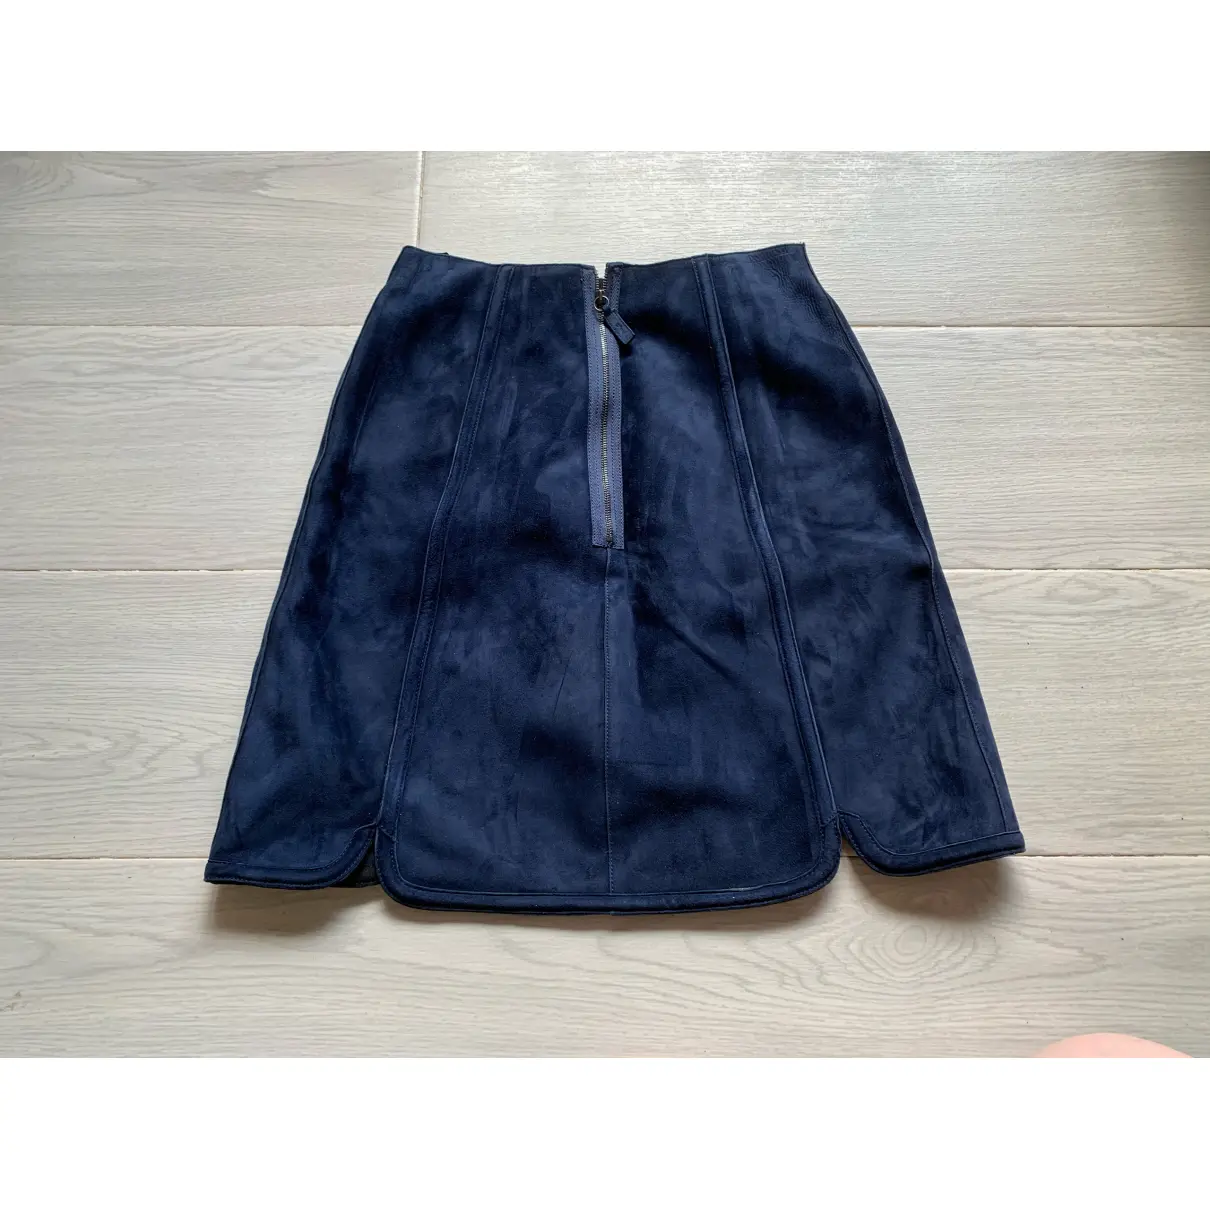 Buy Longchamp Mini skirt online